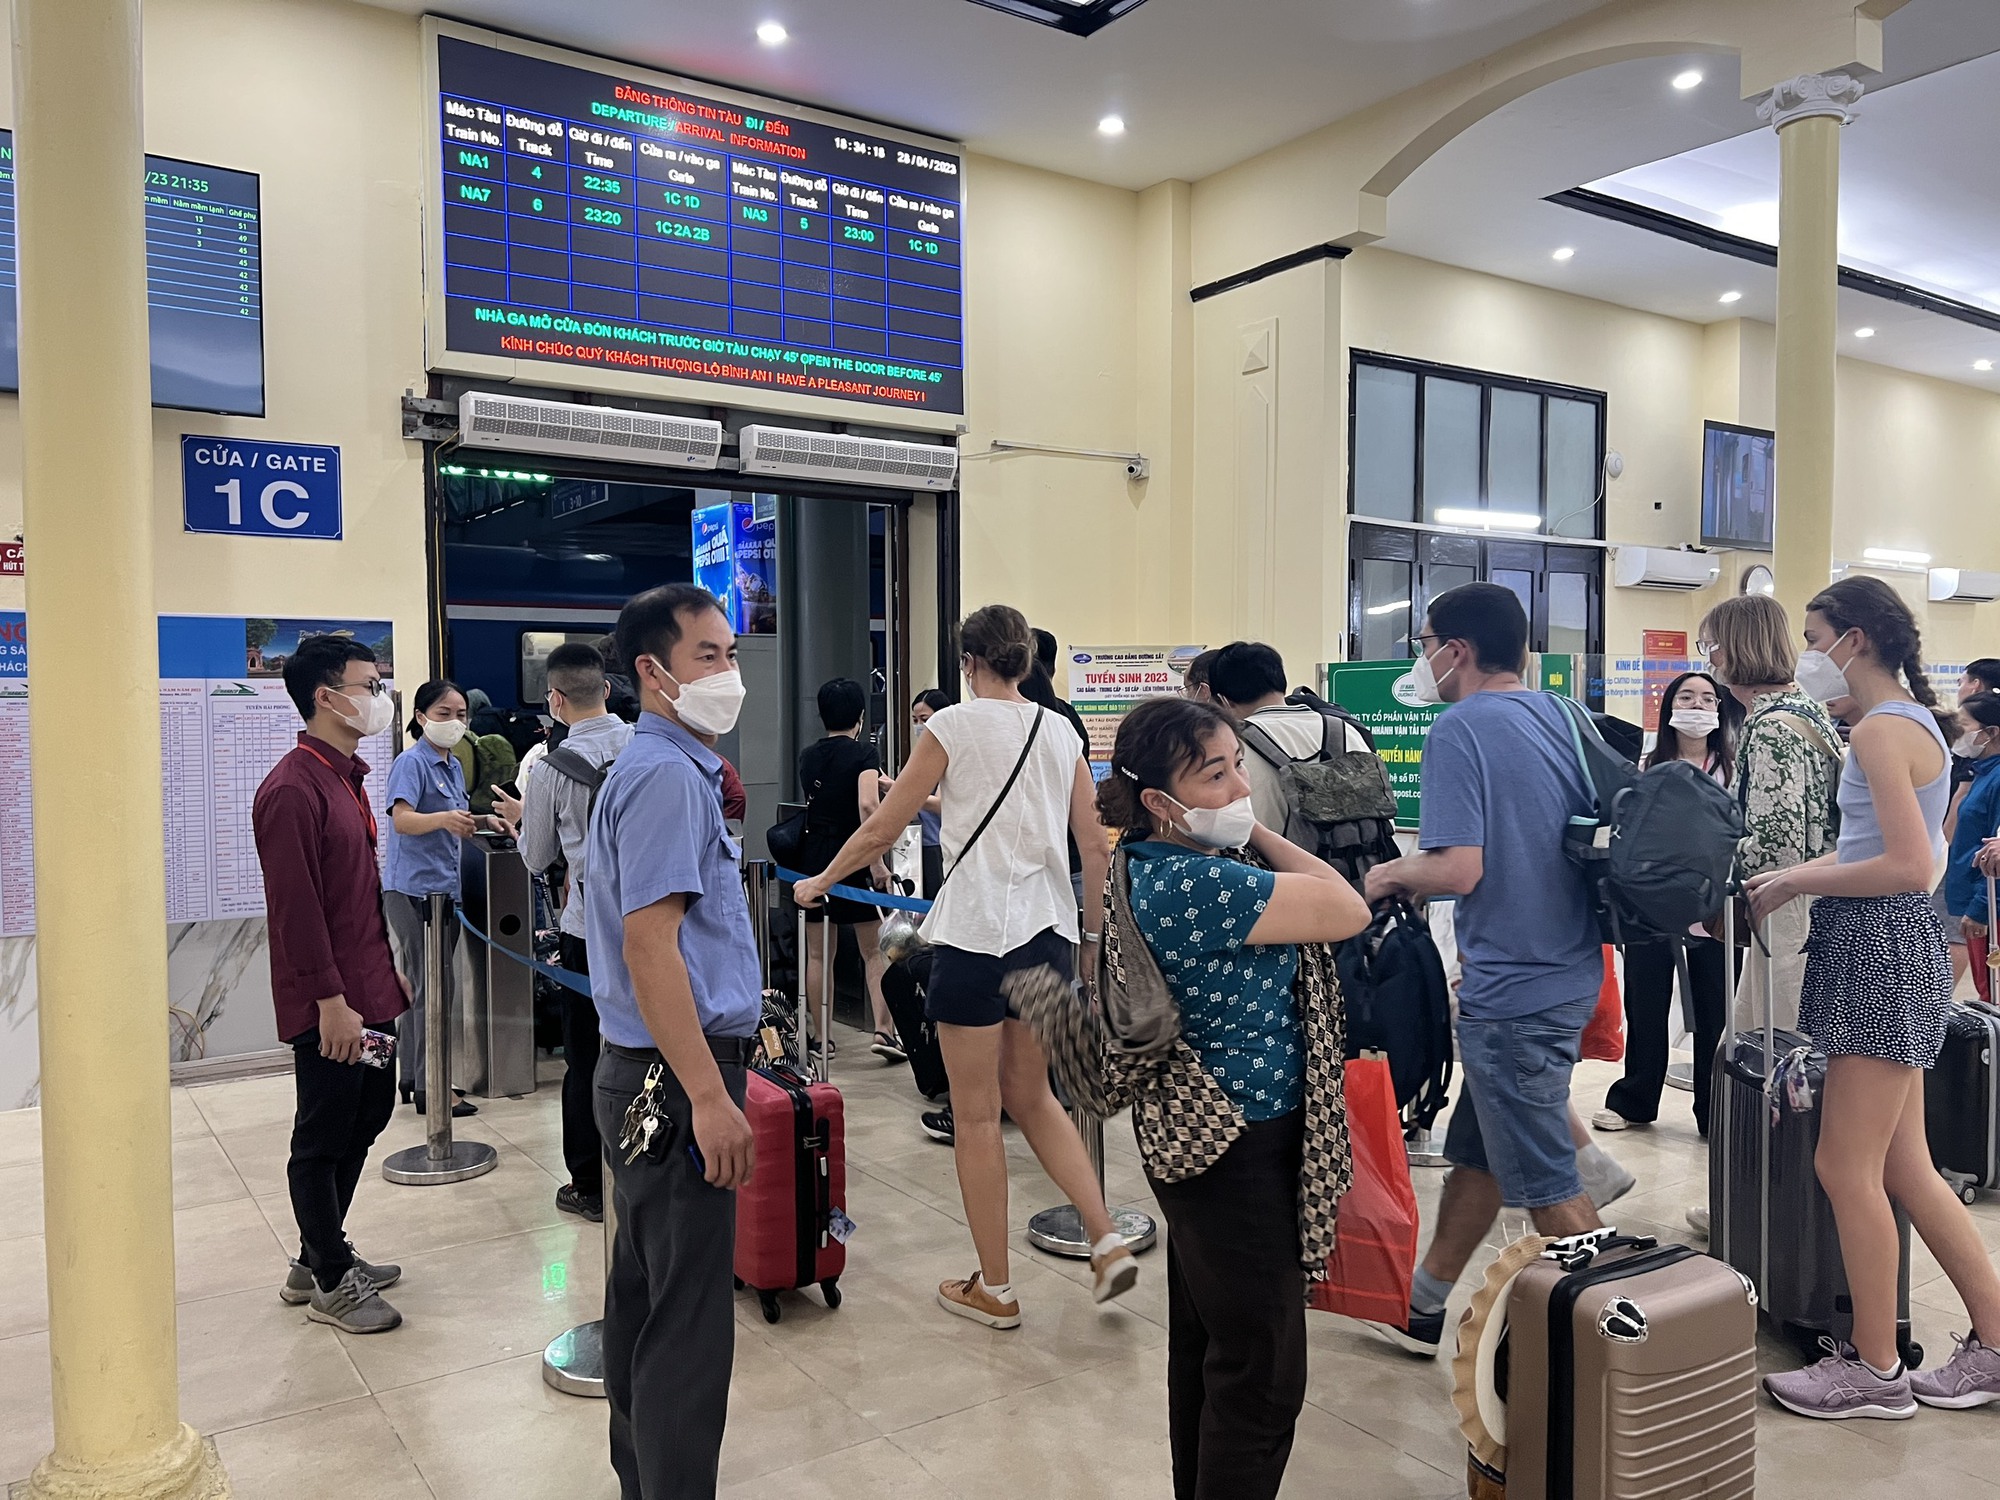 Cận cảnh người dân đổ dồn về ga Hà Nội về quê nghỉ lễ 30/4 - 1/5 - Ảnh 2.